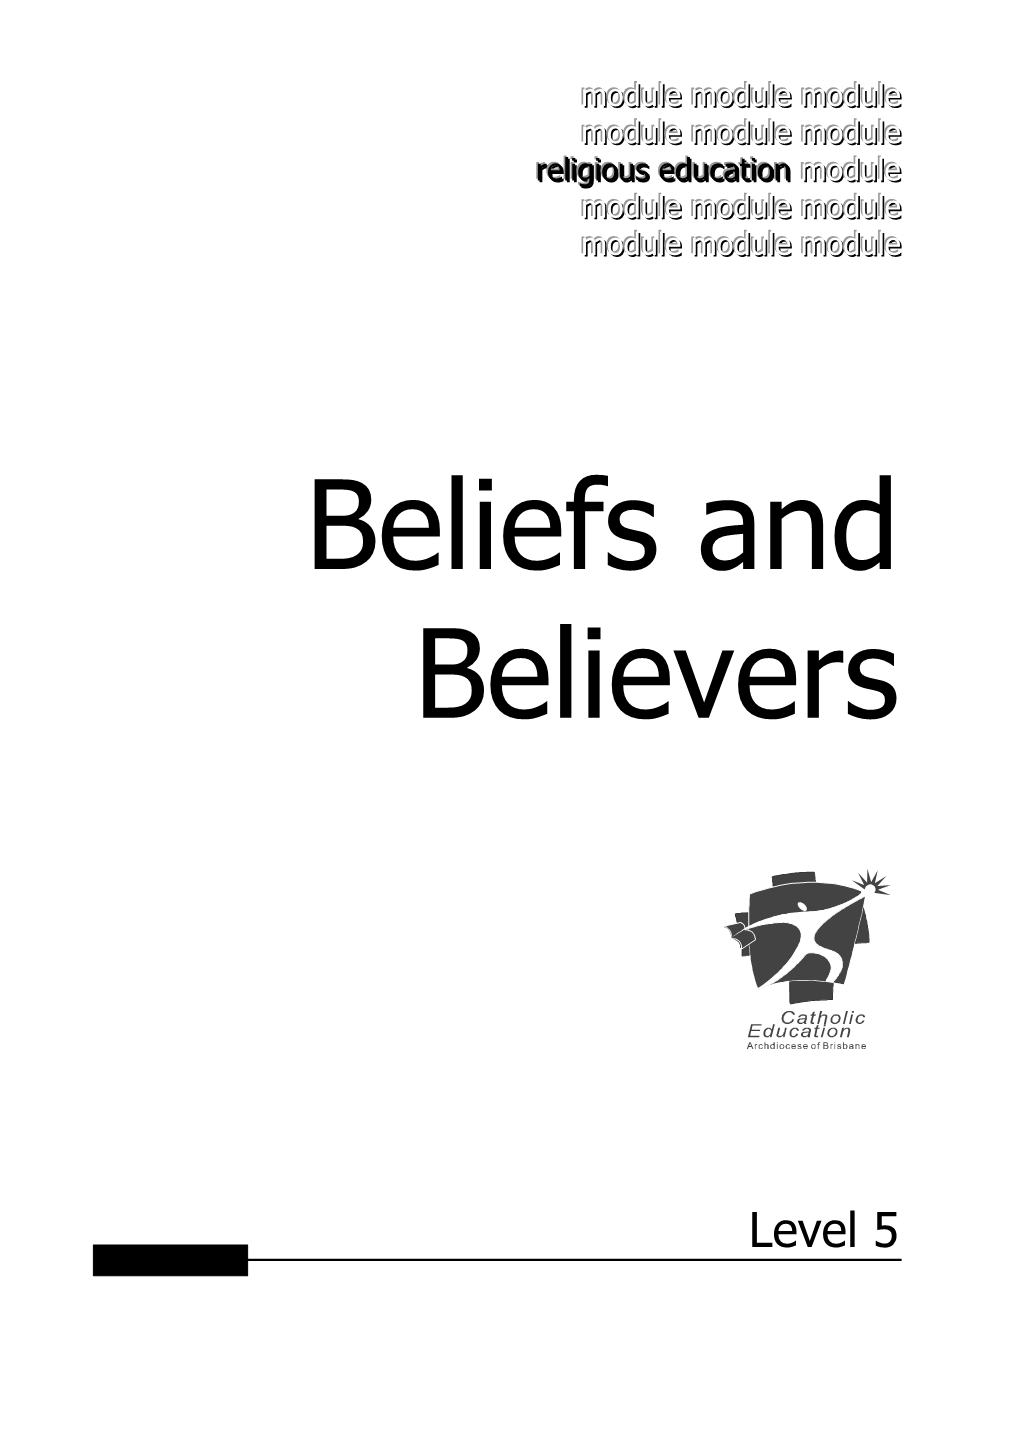 Beliefs and Believers Level 5